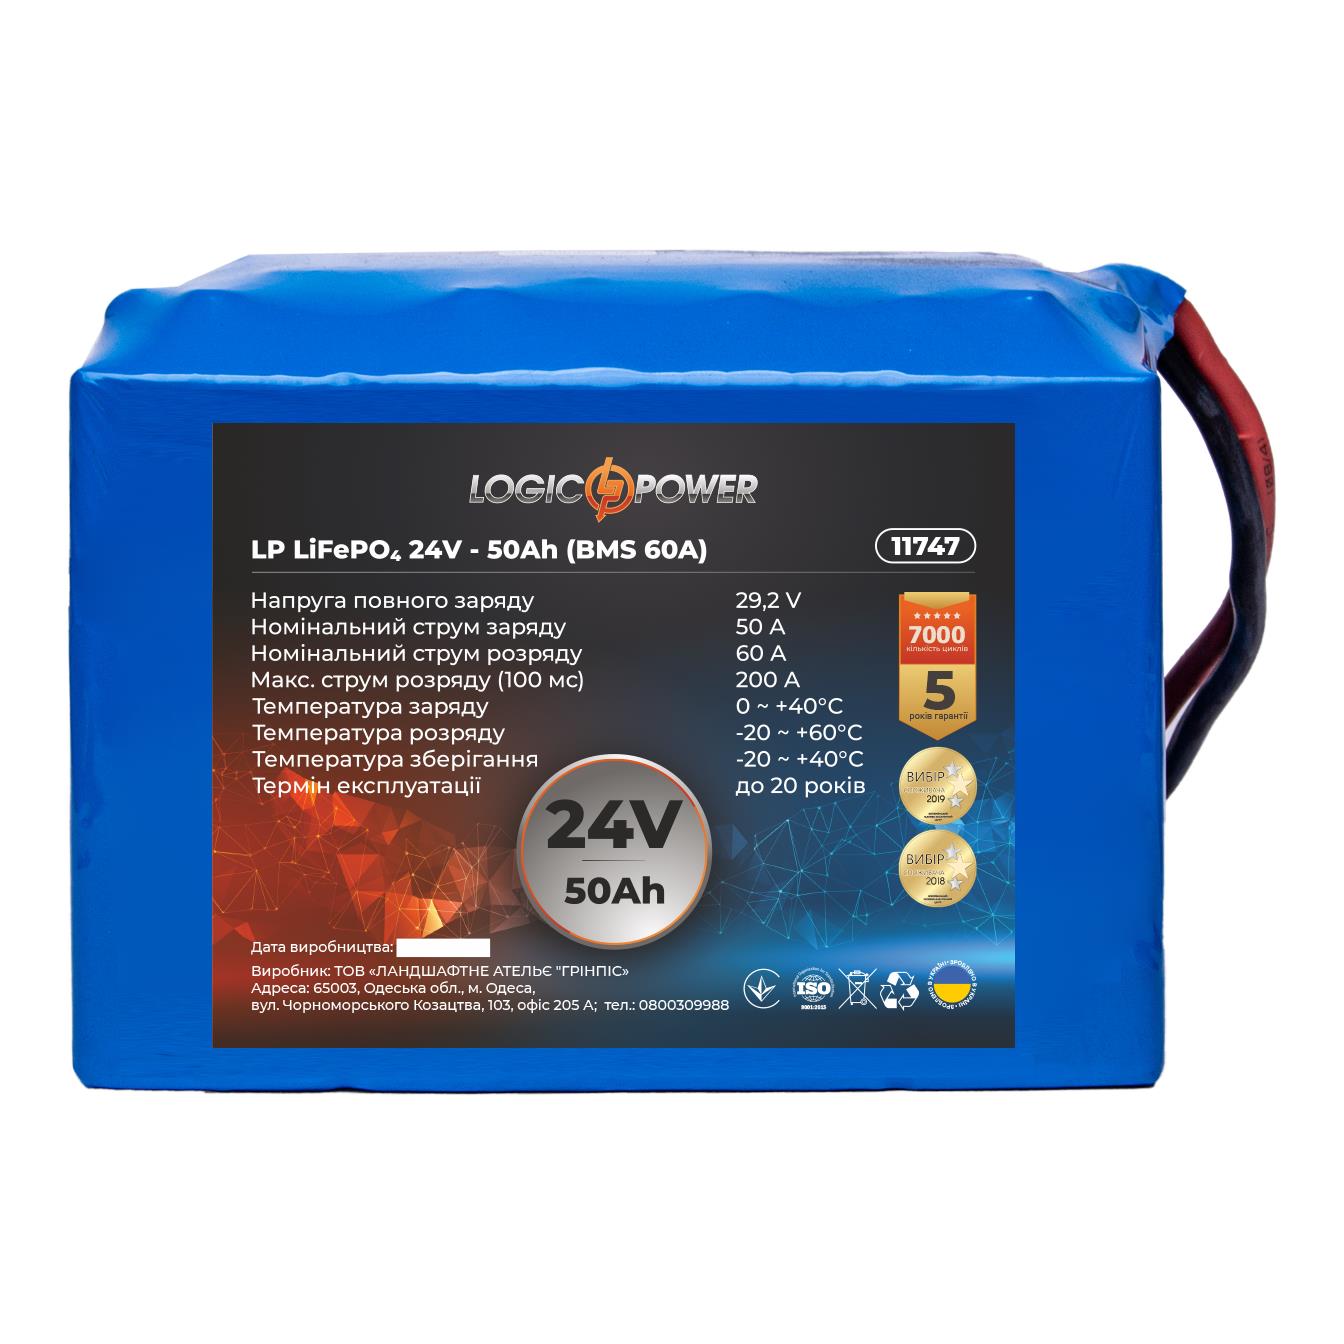 Акумулятор літій-залізо-фосфатний LogicPower LP LiFePO4 24V - 50 Ah (BMS 60A) (11747)